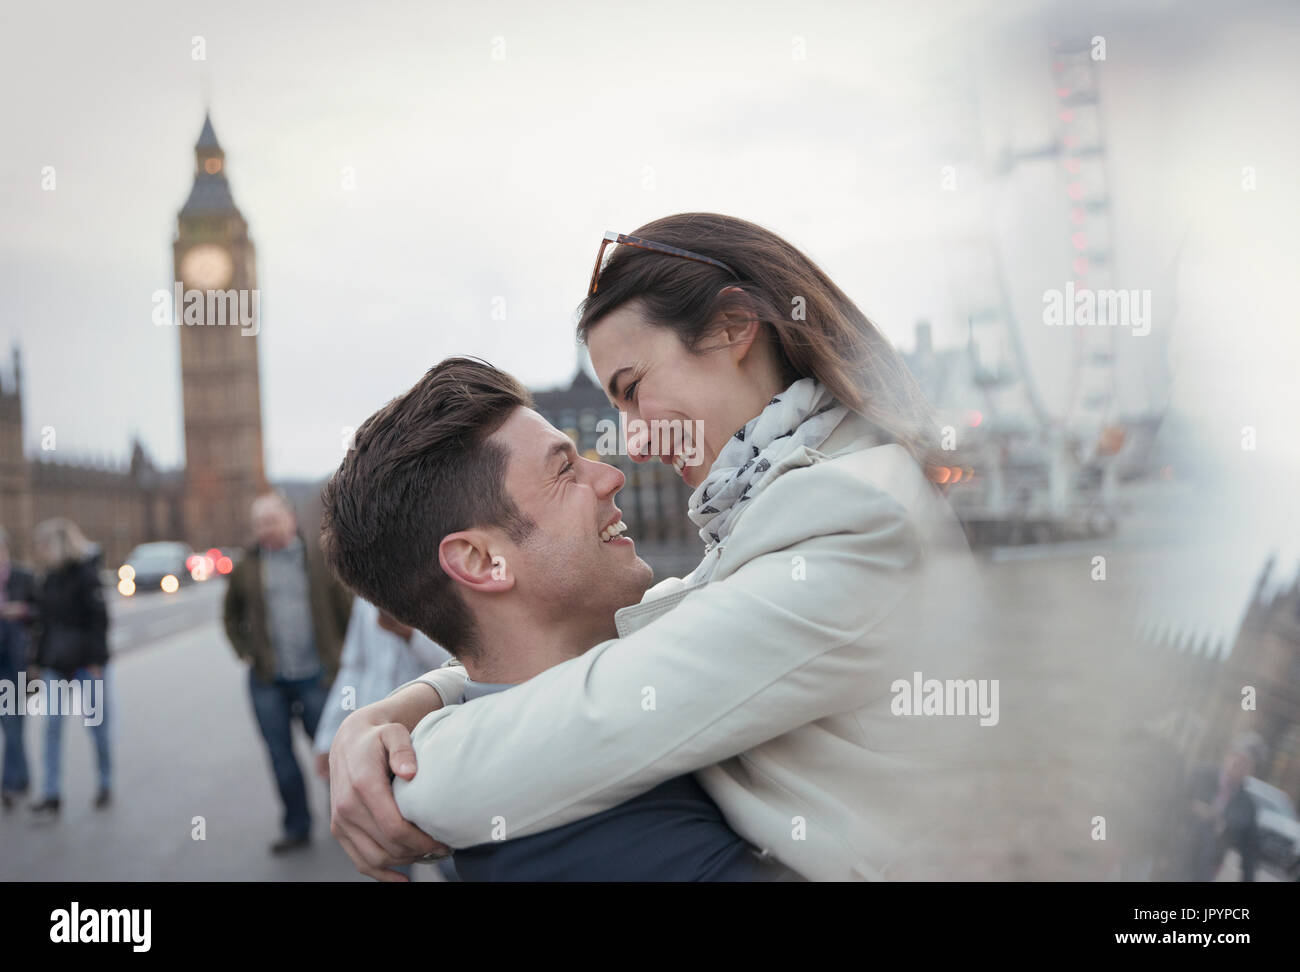 Romantisch, zärtlich paar Touristen umarmen in der Nähe von Big Ben, London, UK Stockfoto